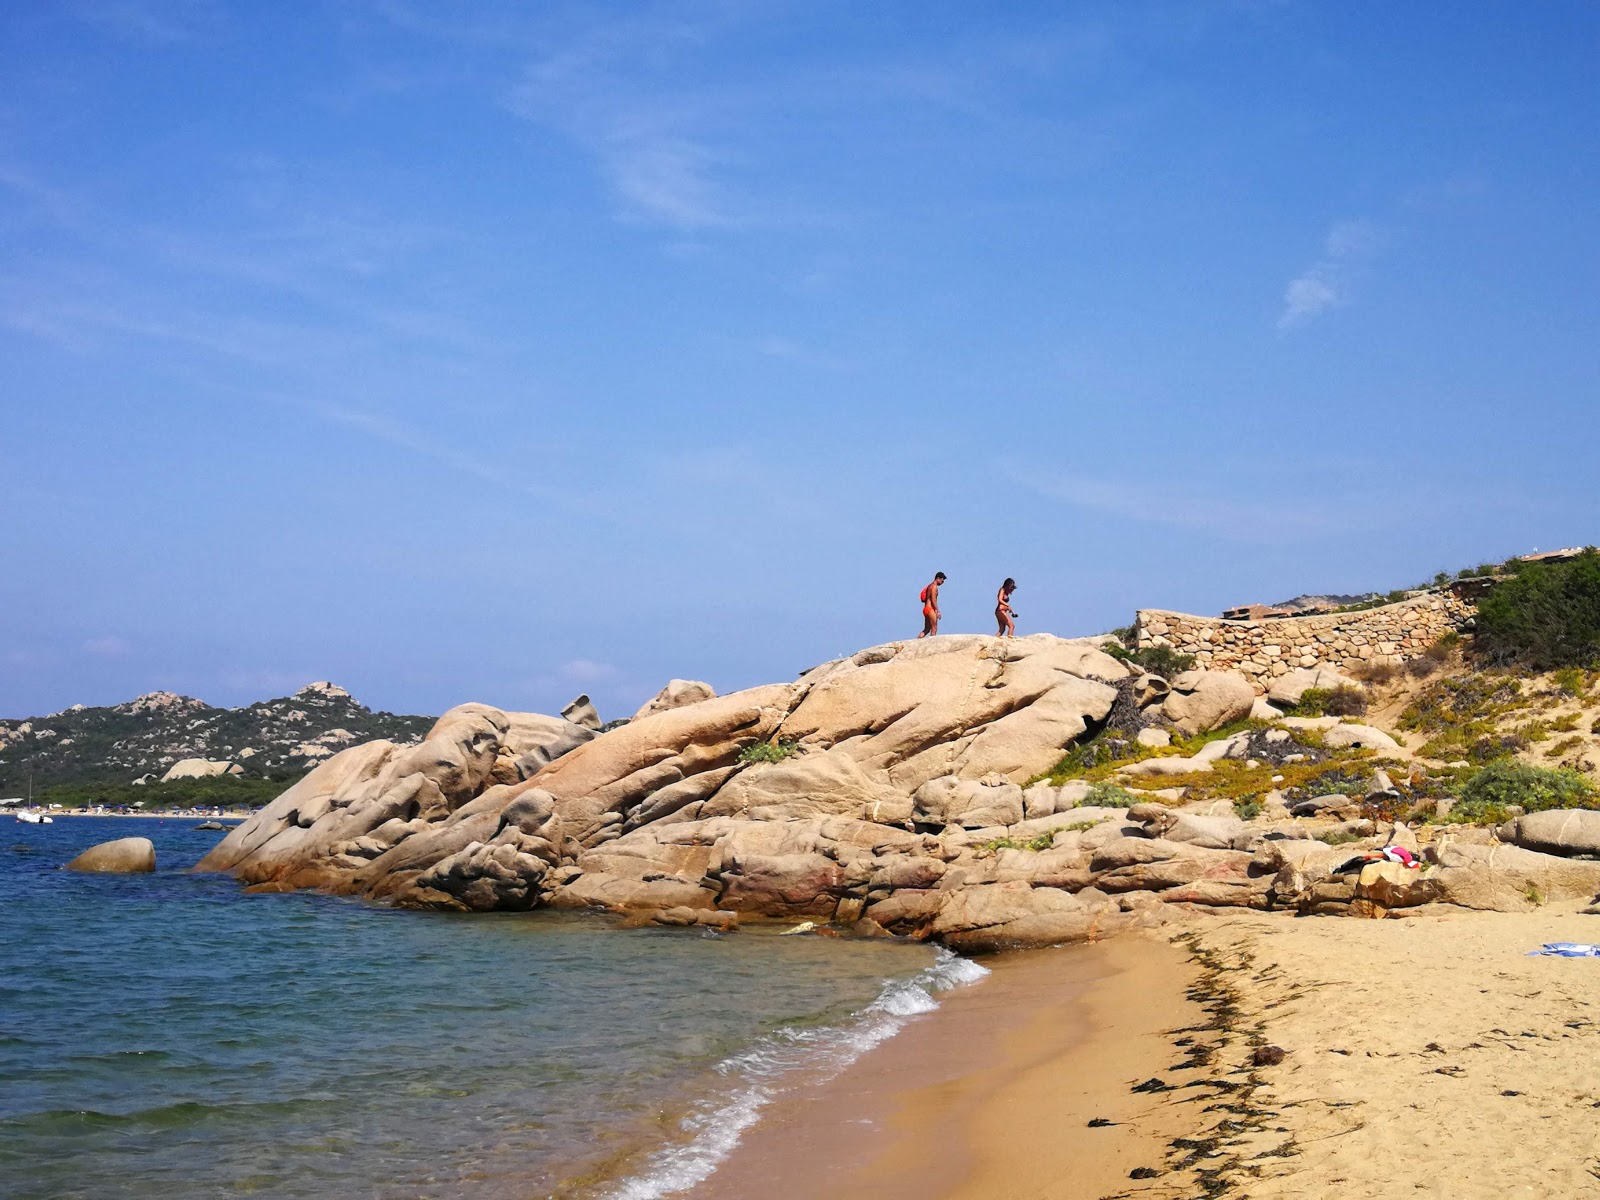 Zdjęcie Spiaggia Su Sarrale II - popularne miejsce wśród znawców relaksu